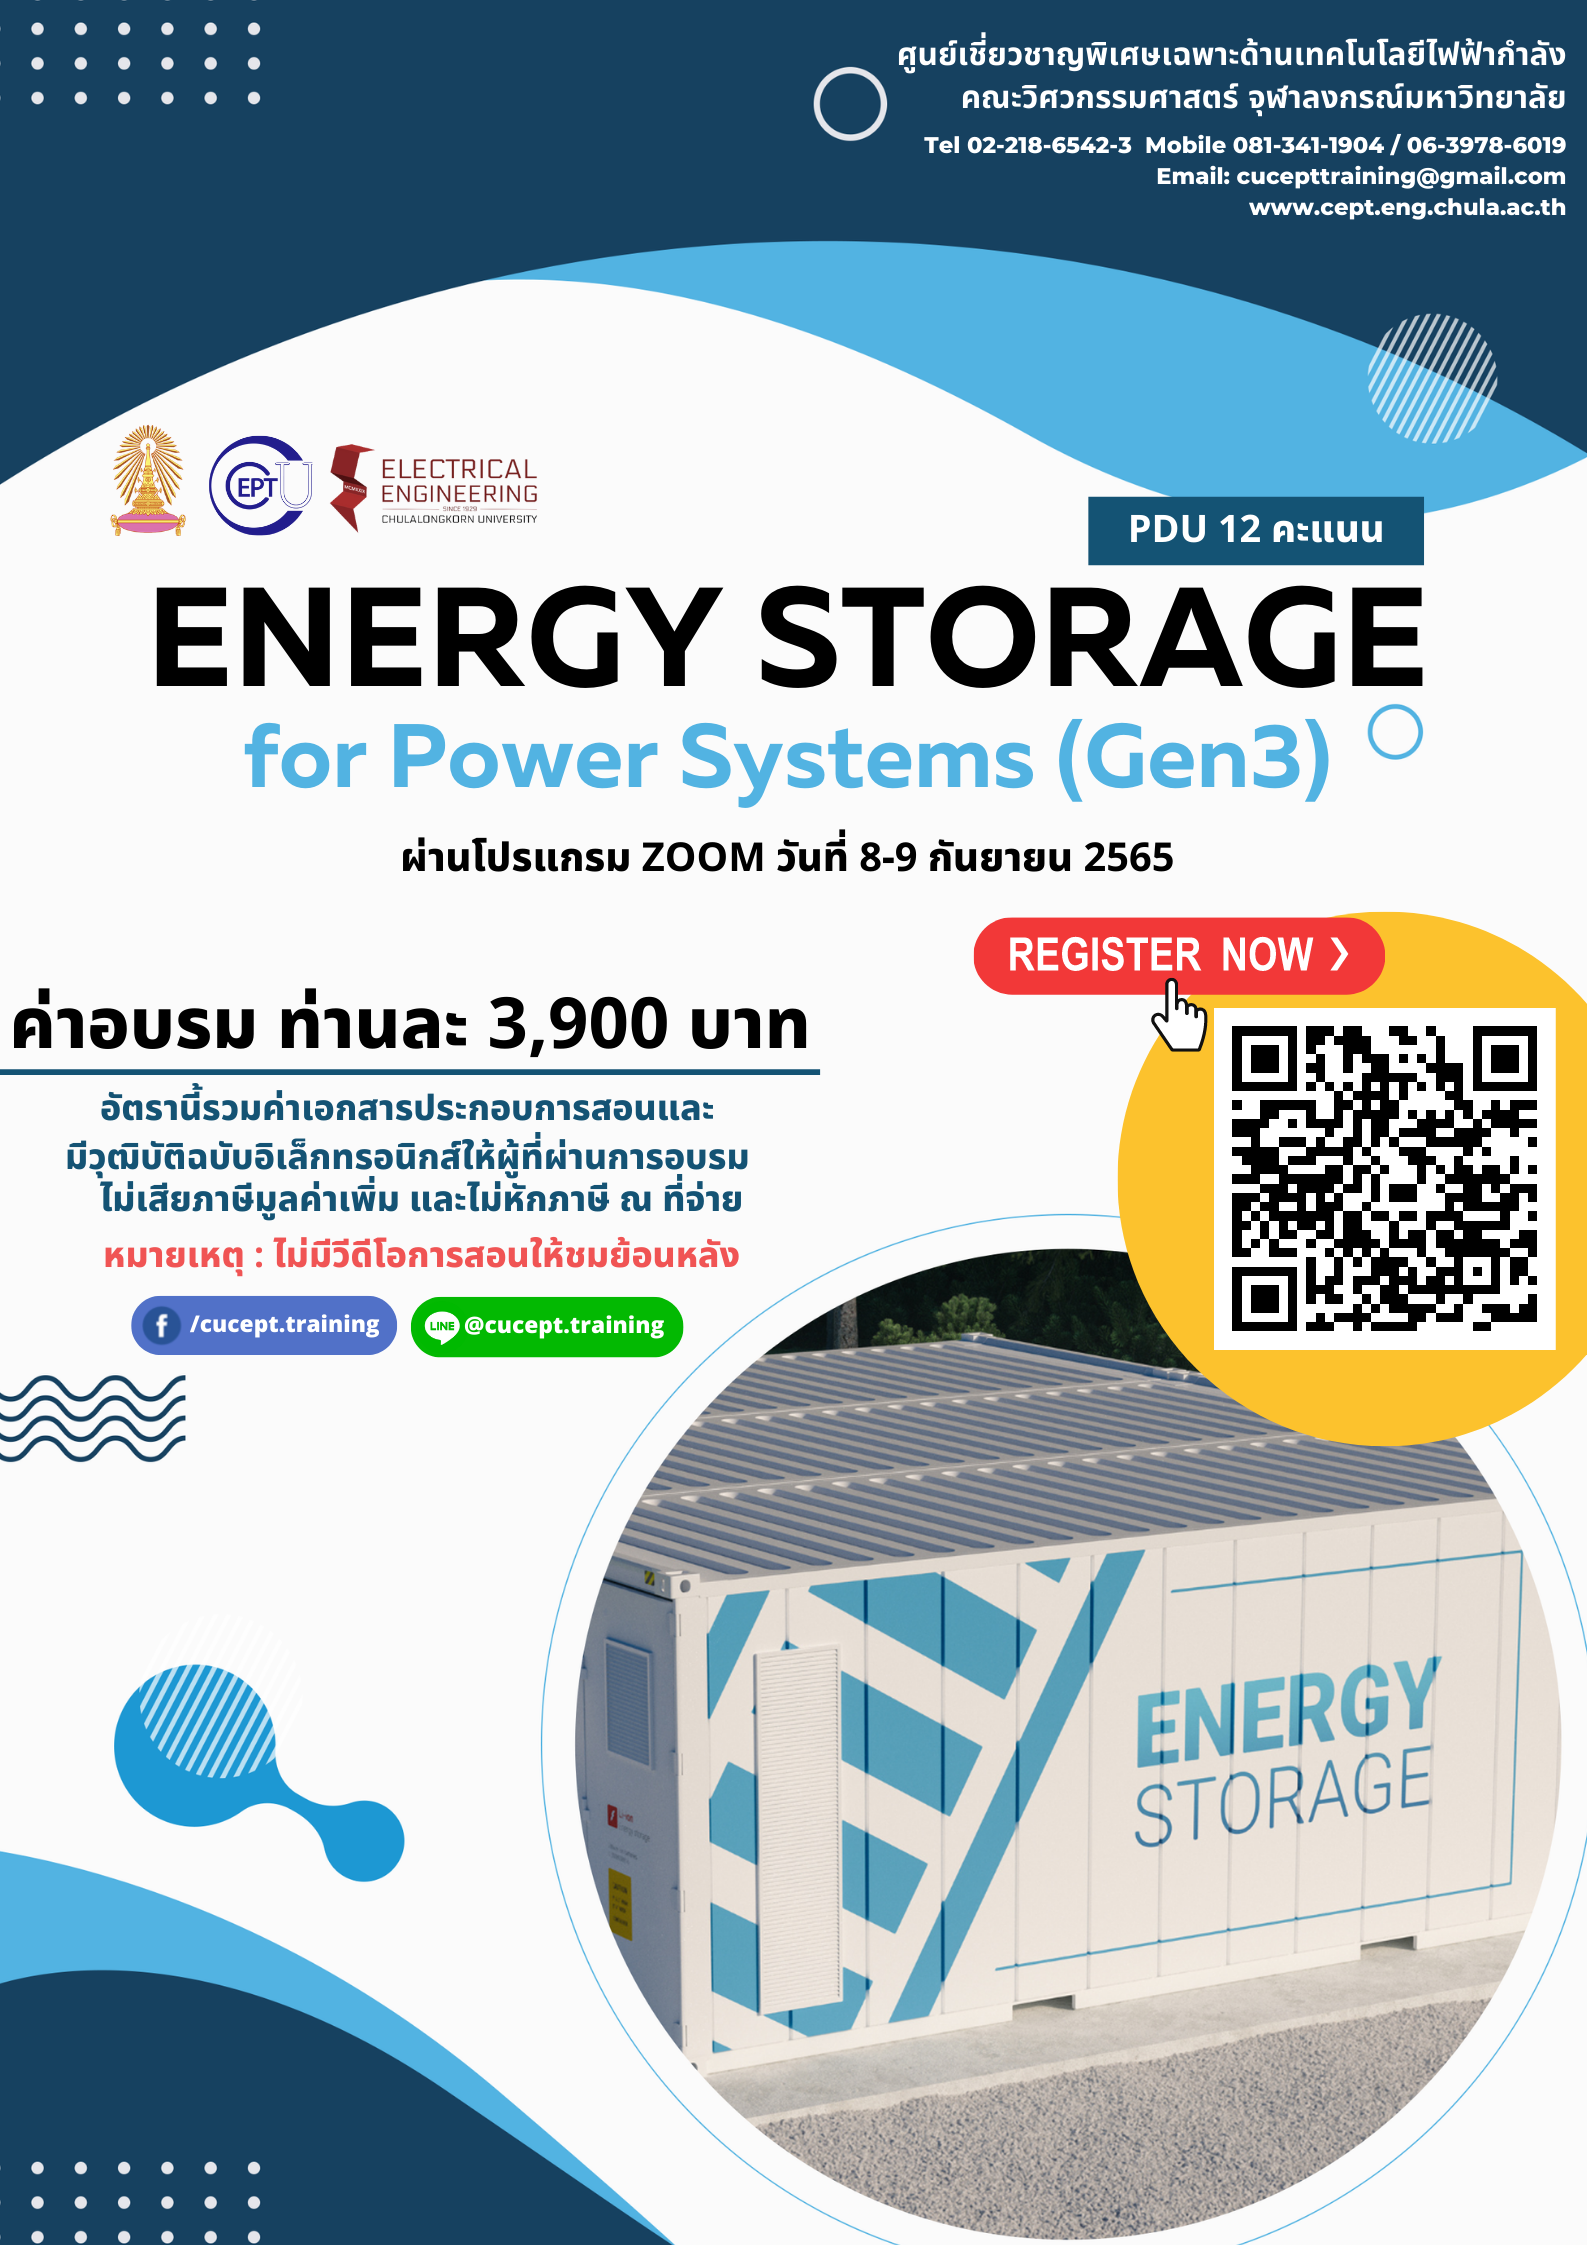 ขอเชิญชวนลงทะเบียนอบรมเรื่อง “Energy Storage for Power System (Gen3)” ระหว่างวันที่ 8-9 กันยายน 2565